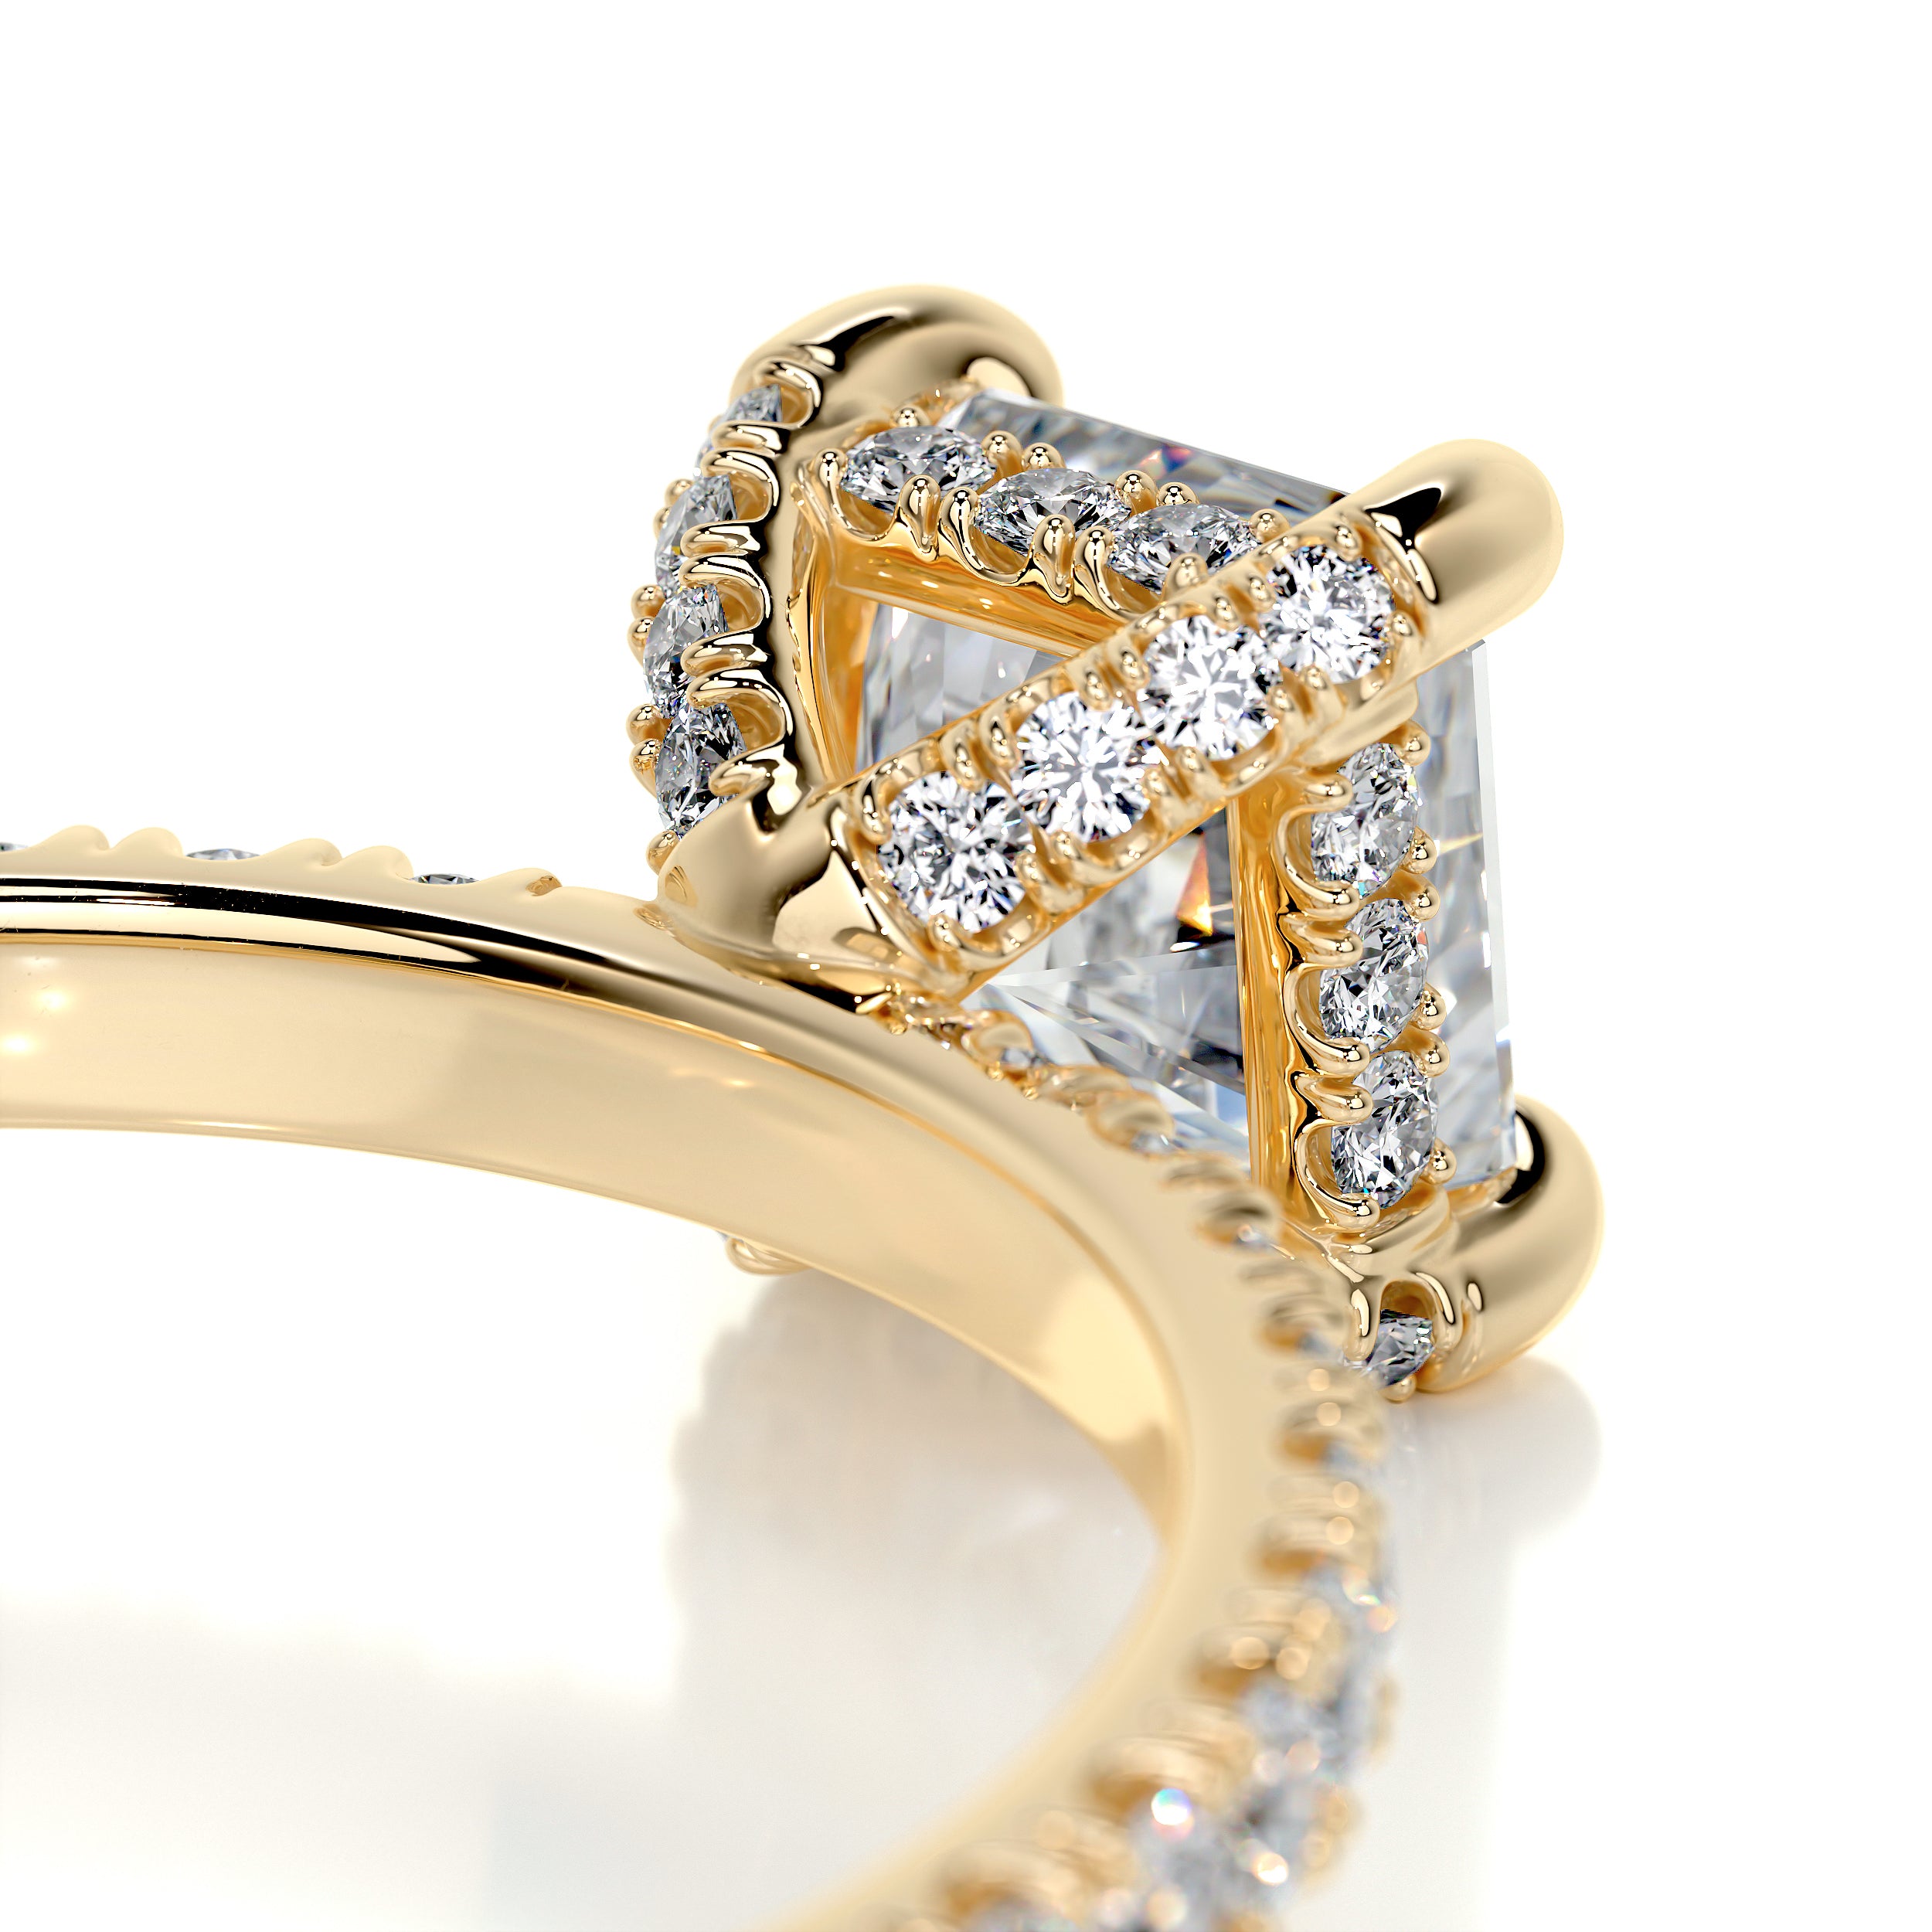 Deborah Diamond Engagement Ring   (1.50 Carat) -18K Yellow Gold